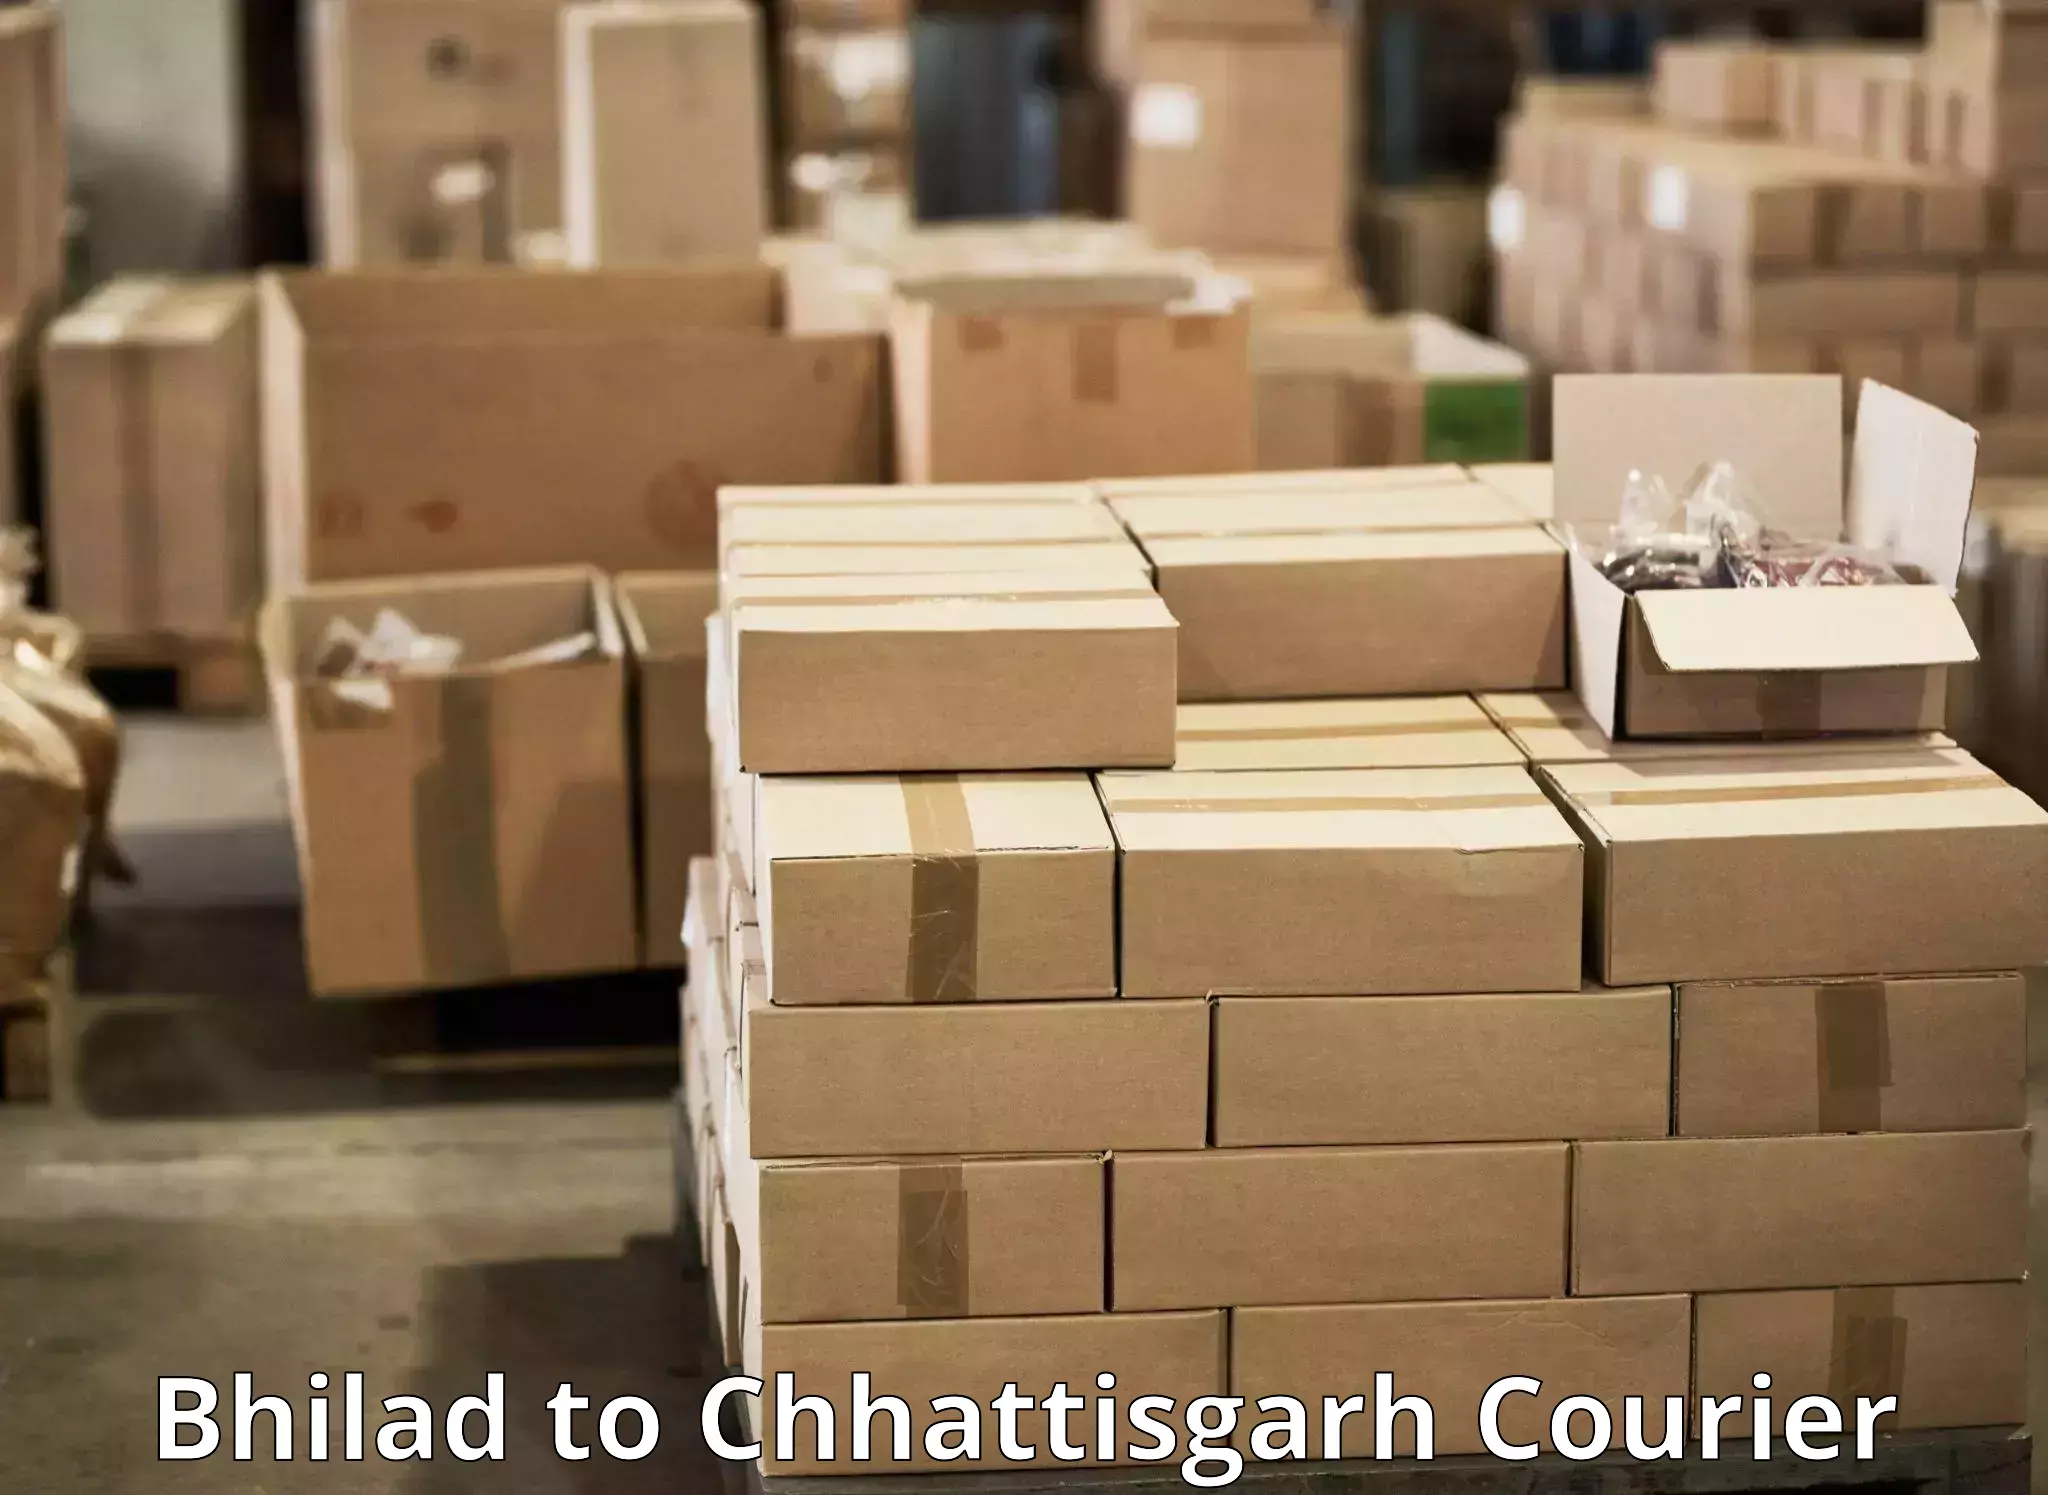 Fast delivery service in Bhilad to Chhattisgarh